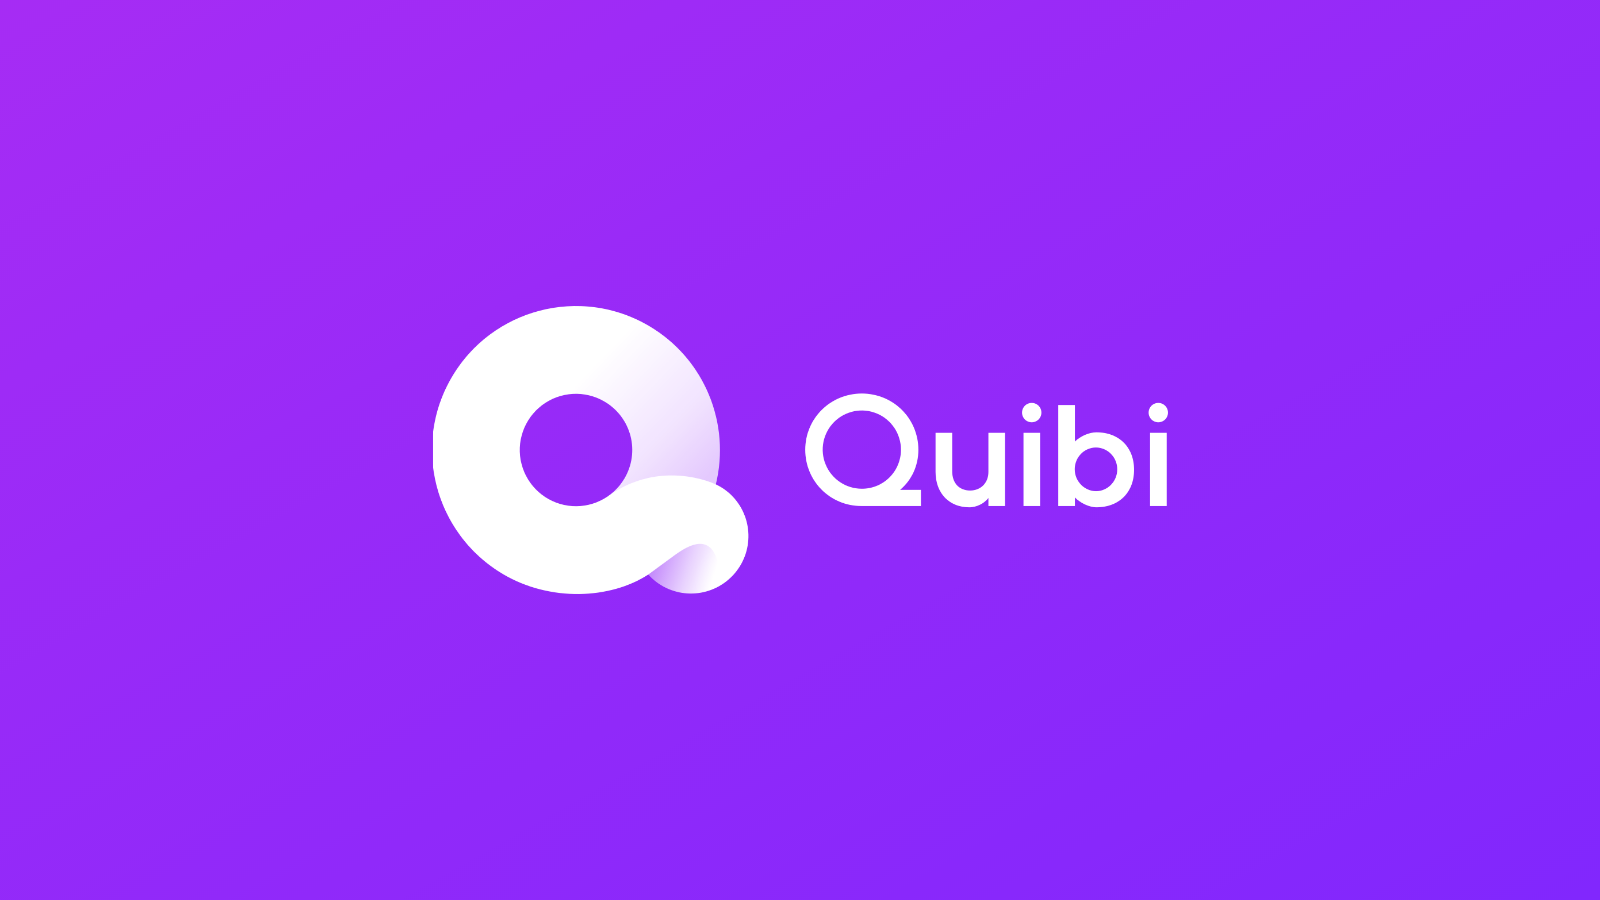 إطلاق خدمة البث الجديدة "Quibi" بإصدار تجريبي مجاني لمدة 90 يومًا 261